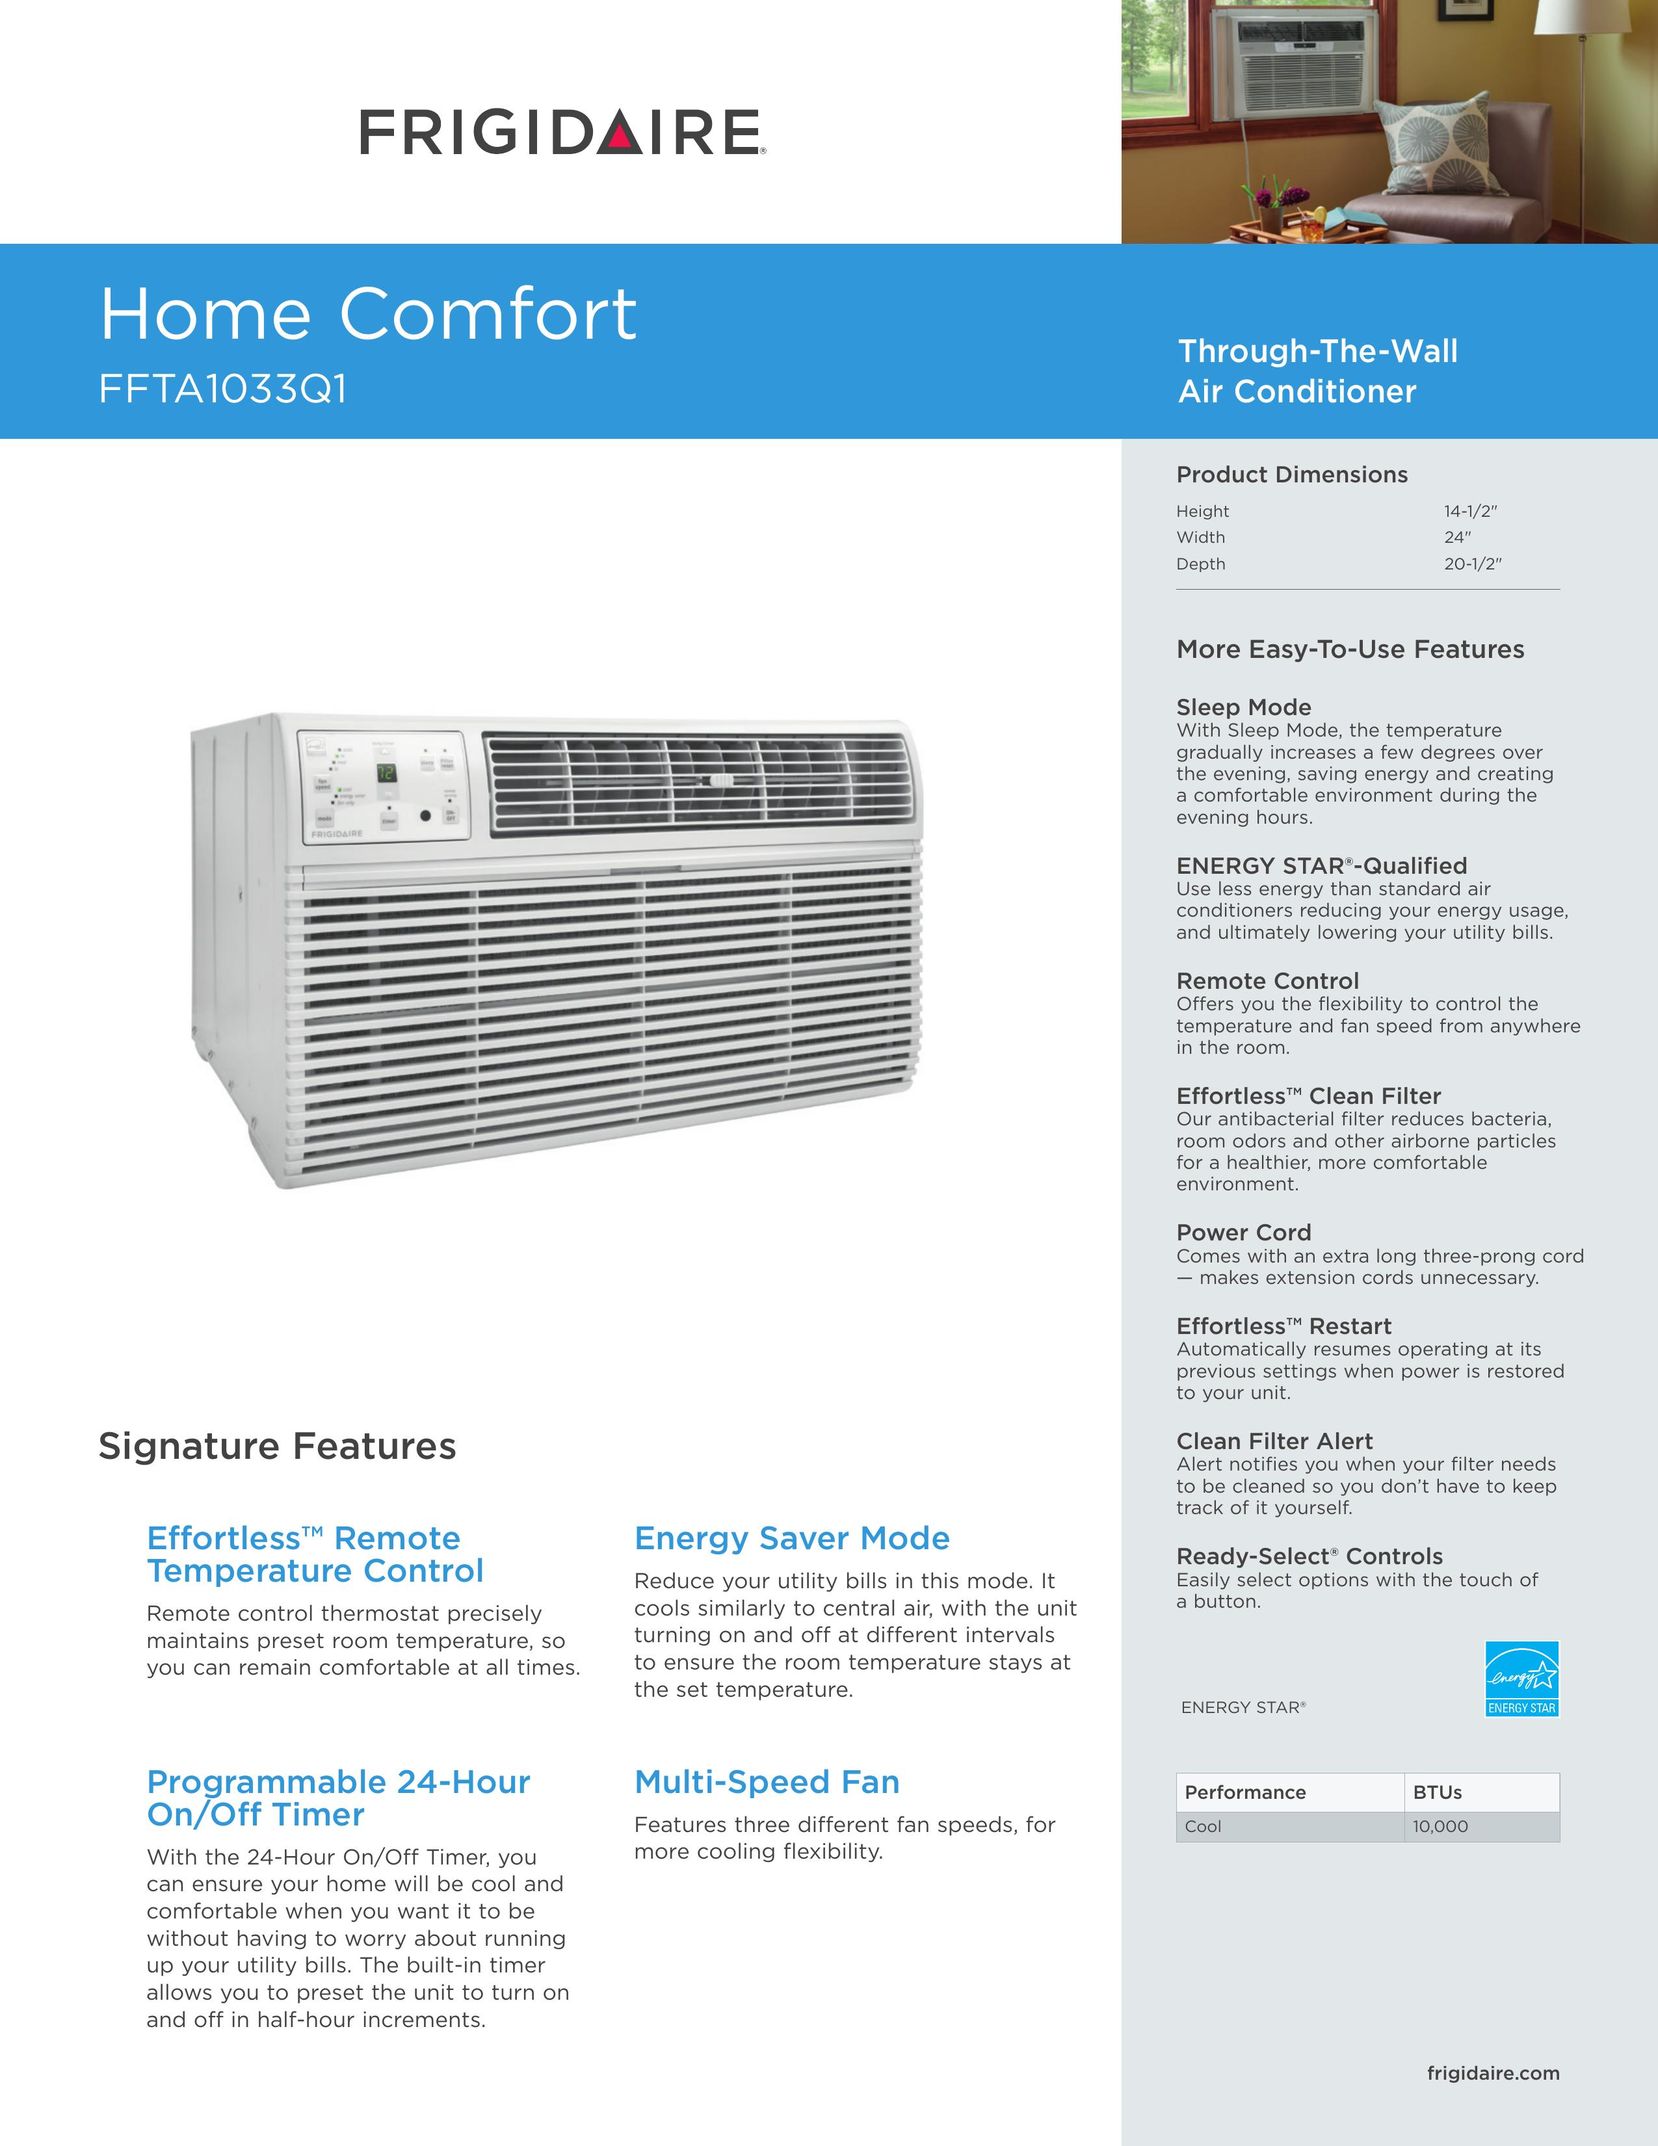 Frigidaire FFTA1033Q1 Air Conditioner User Manual